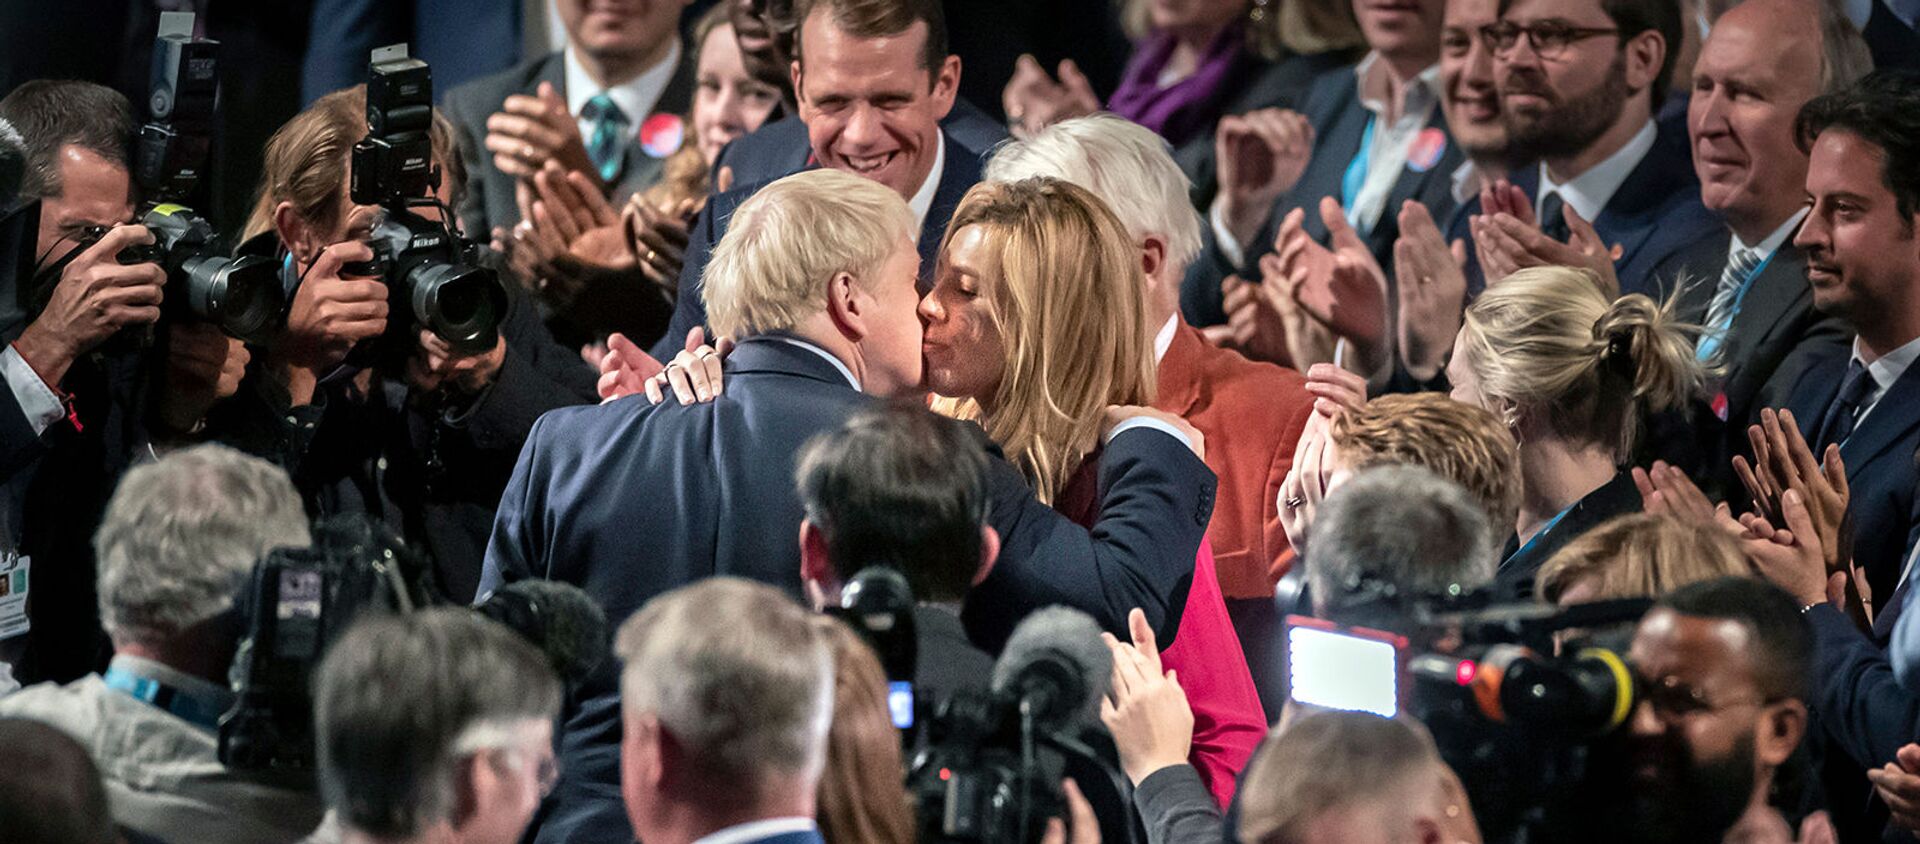 Премьер-министр Великобритании Борис Джонсон целует свою подругу Кэрри Саймондс на конференции Консервативной партии (2 октября 2019). Манчестер - Sputnik Армения, 1920, 27.08.2020